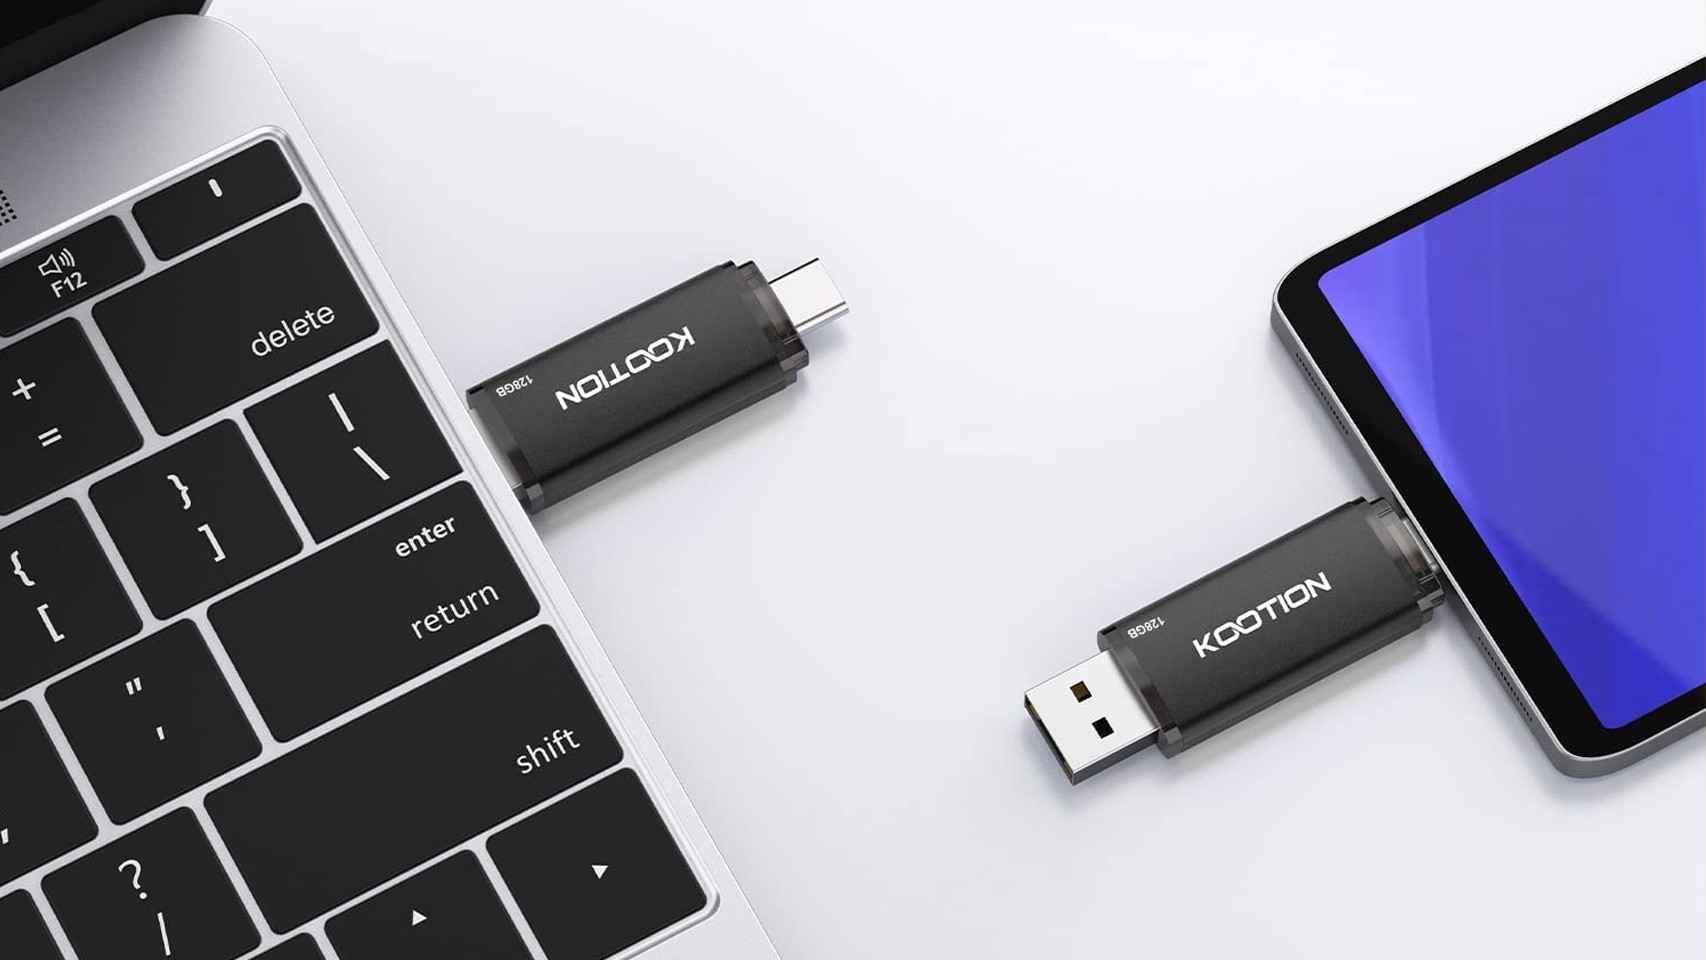 USB OTG allows external backup